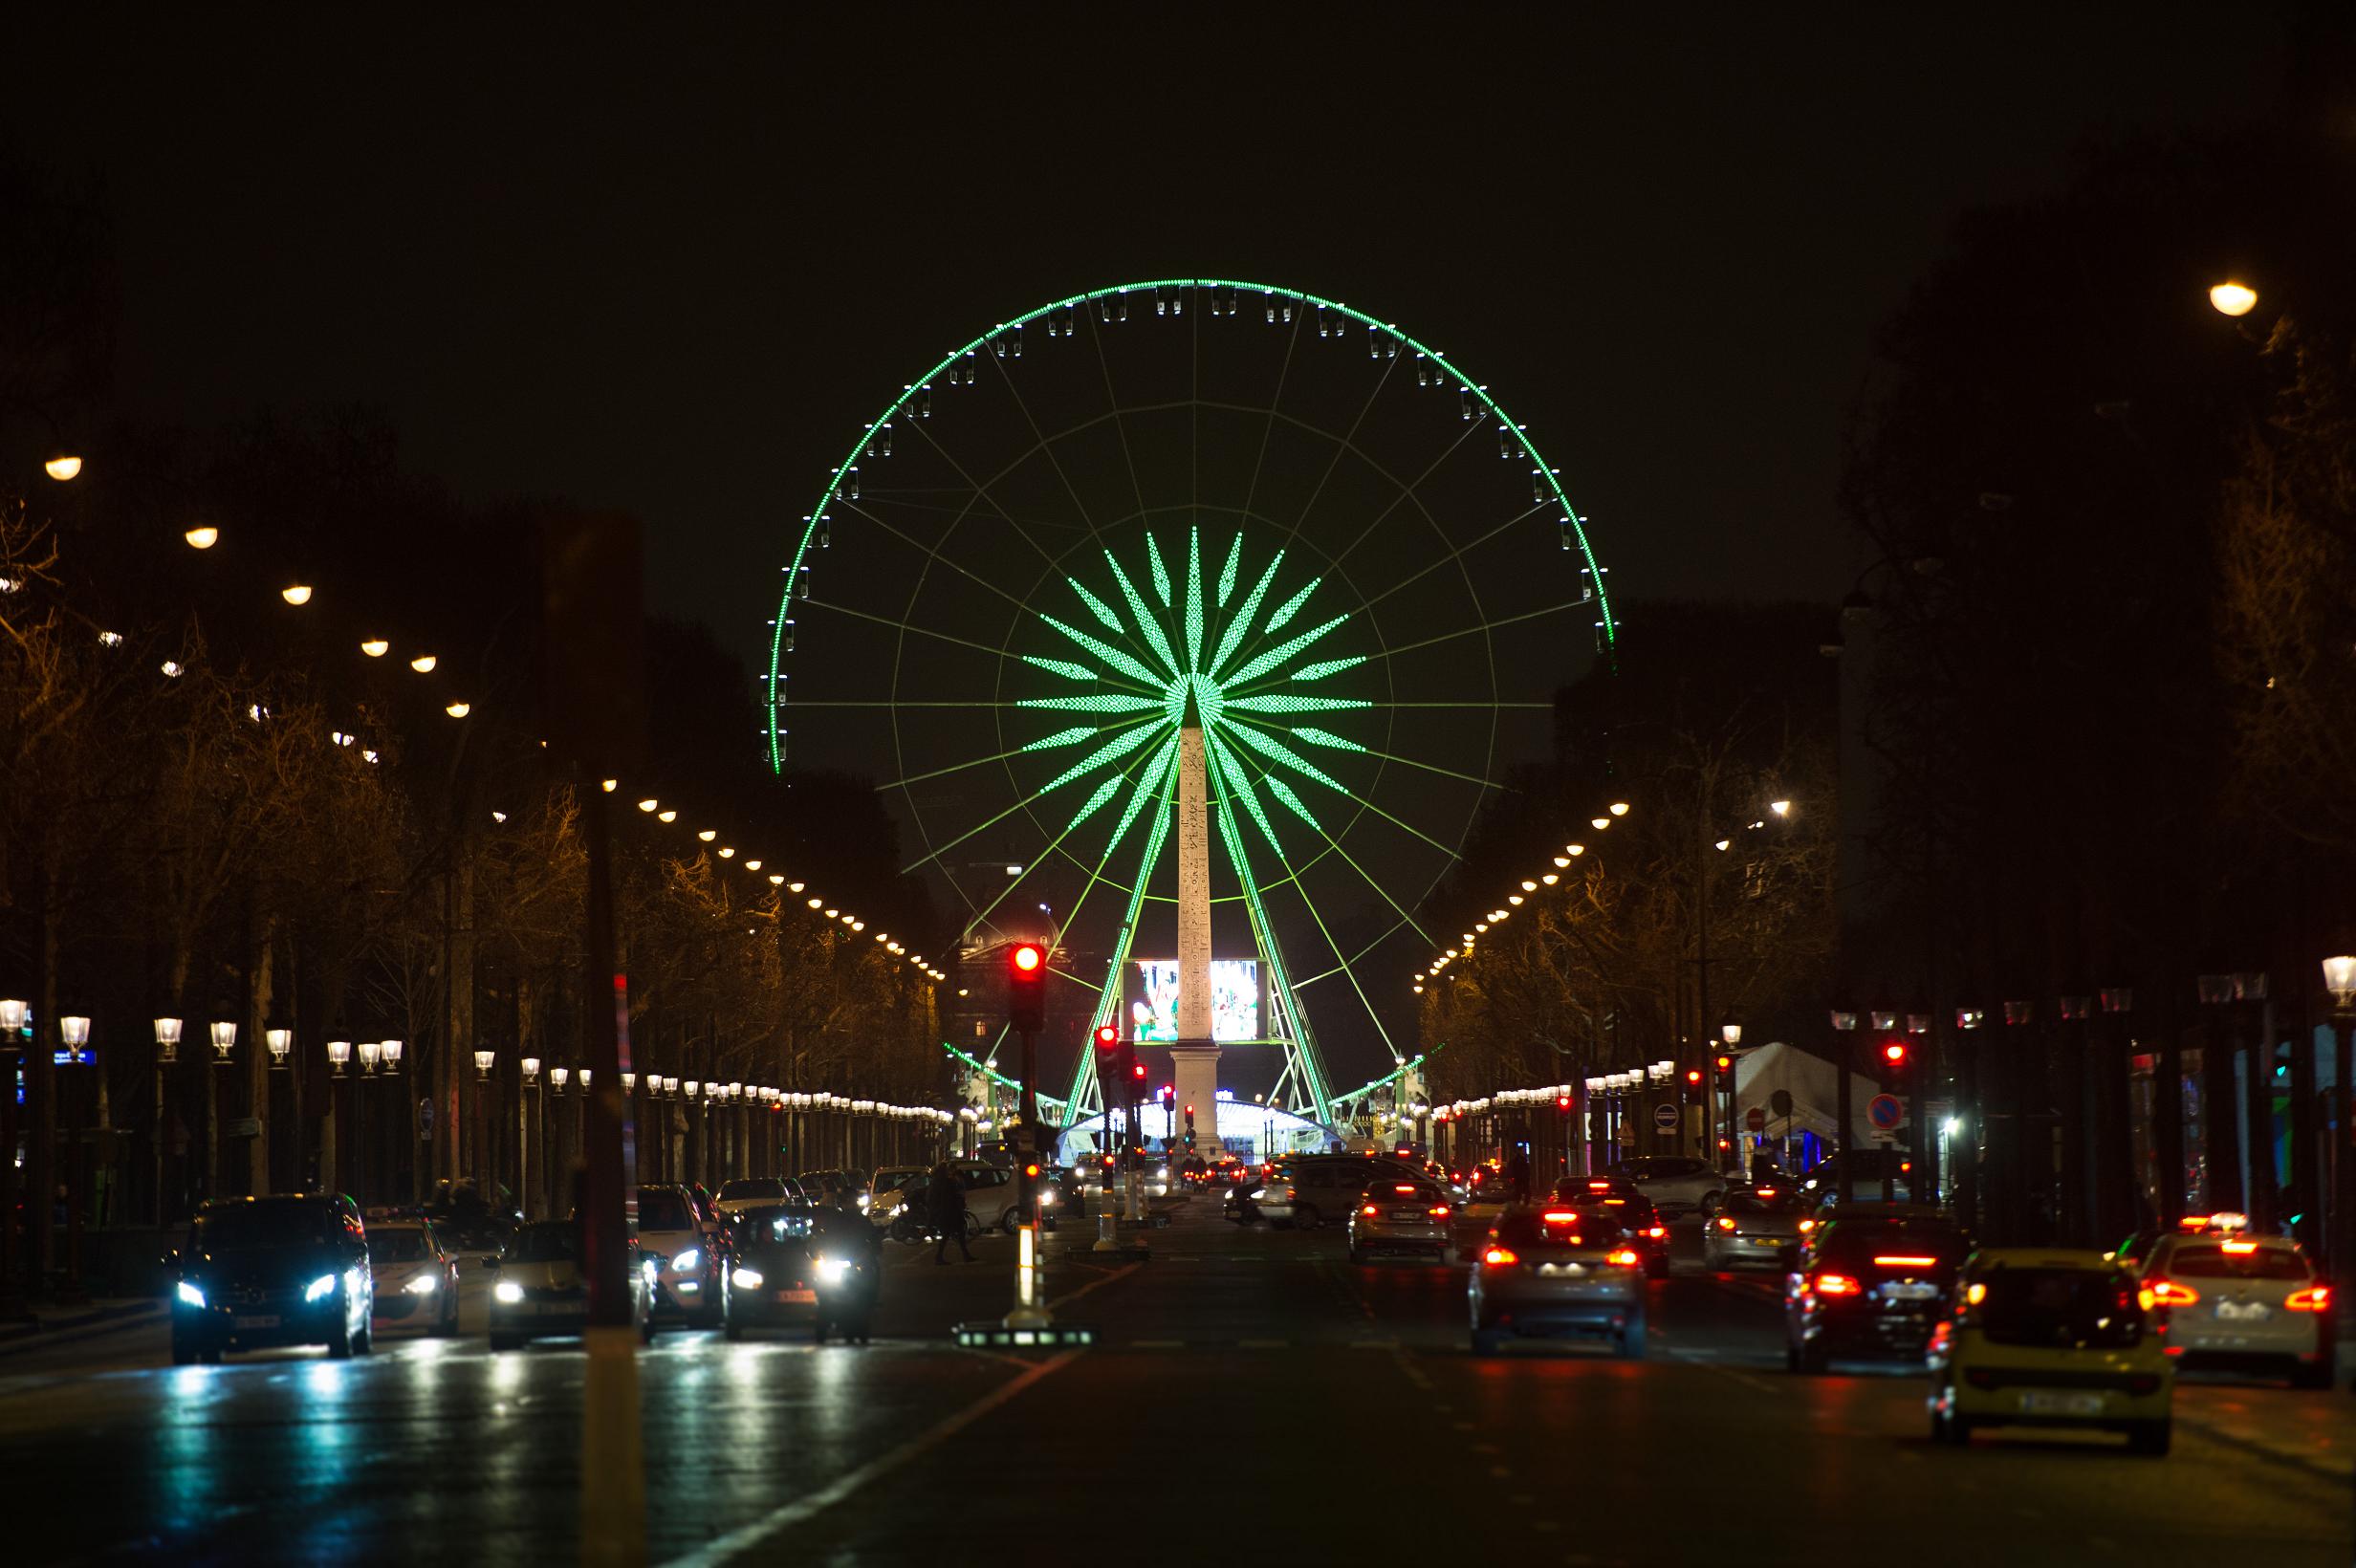 Le 17 mars, la Roue de Paris aux couleurs de l'Irlande. Photo O.T.